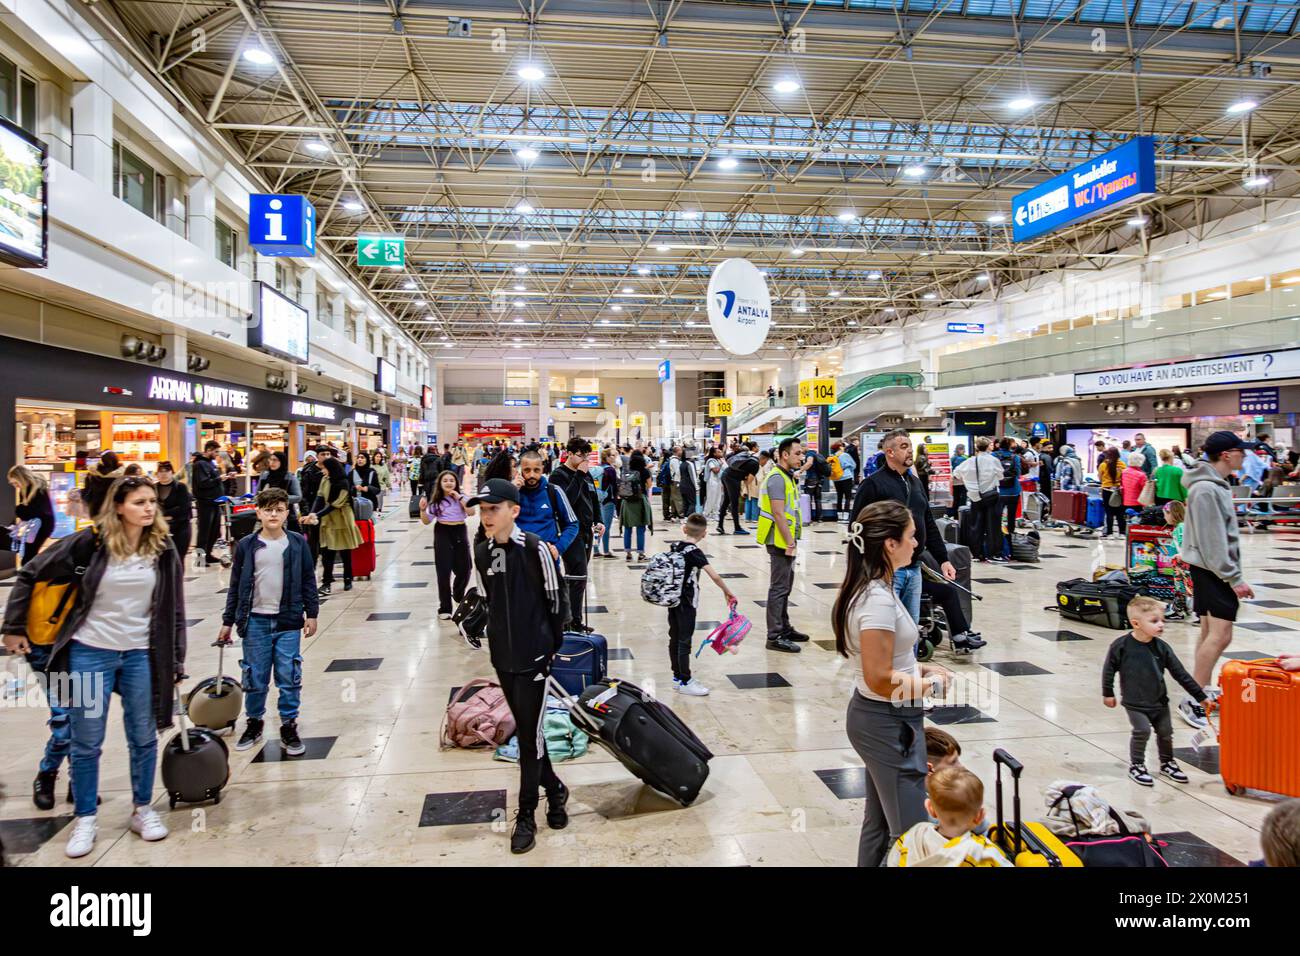 Le hall des bagages de l'aéroport d'Antalya en Turquie, occupé par les passagers à récupérer leurs bagages Banque D'Images